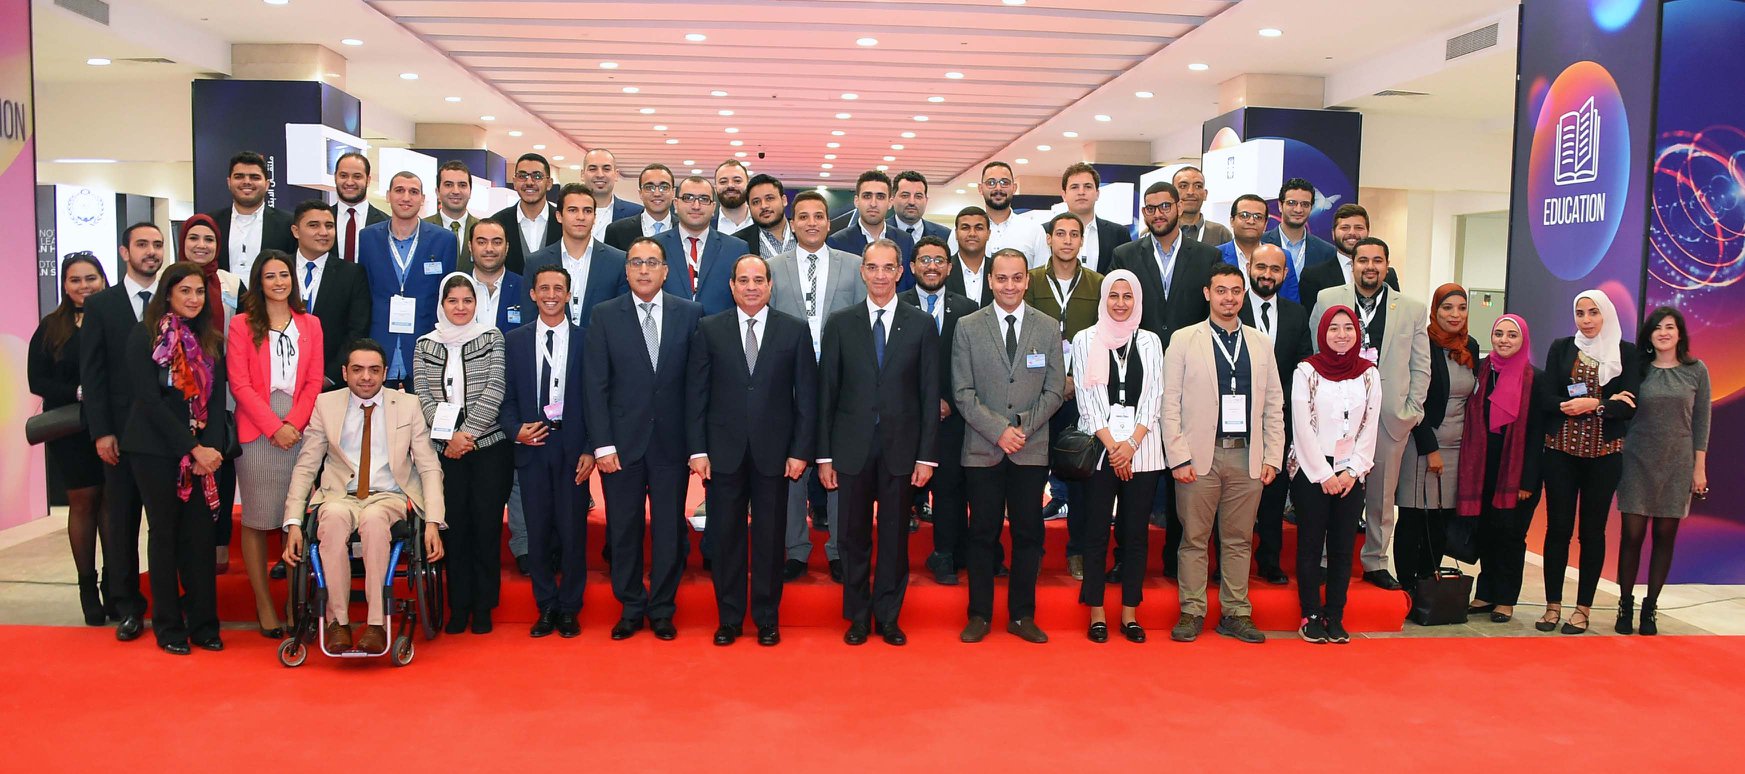   تفاصيل افتتاح الرئيس السيسي لمؤتمر ومعرض القاهرة الدولي للاتصالات وتكنولوجيا المعلومات